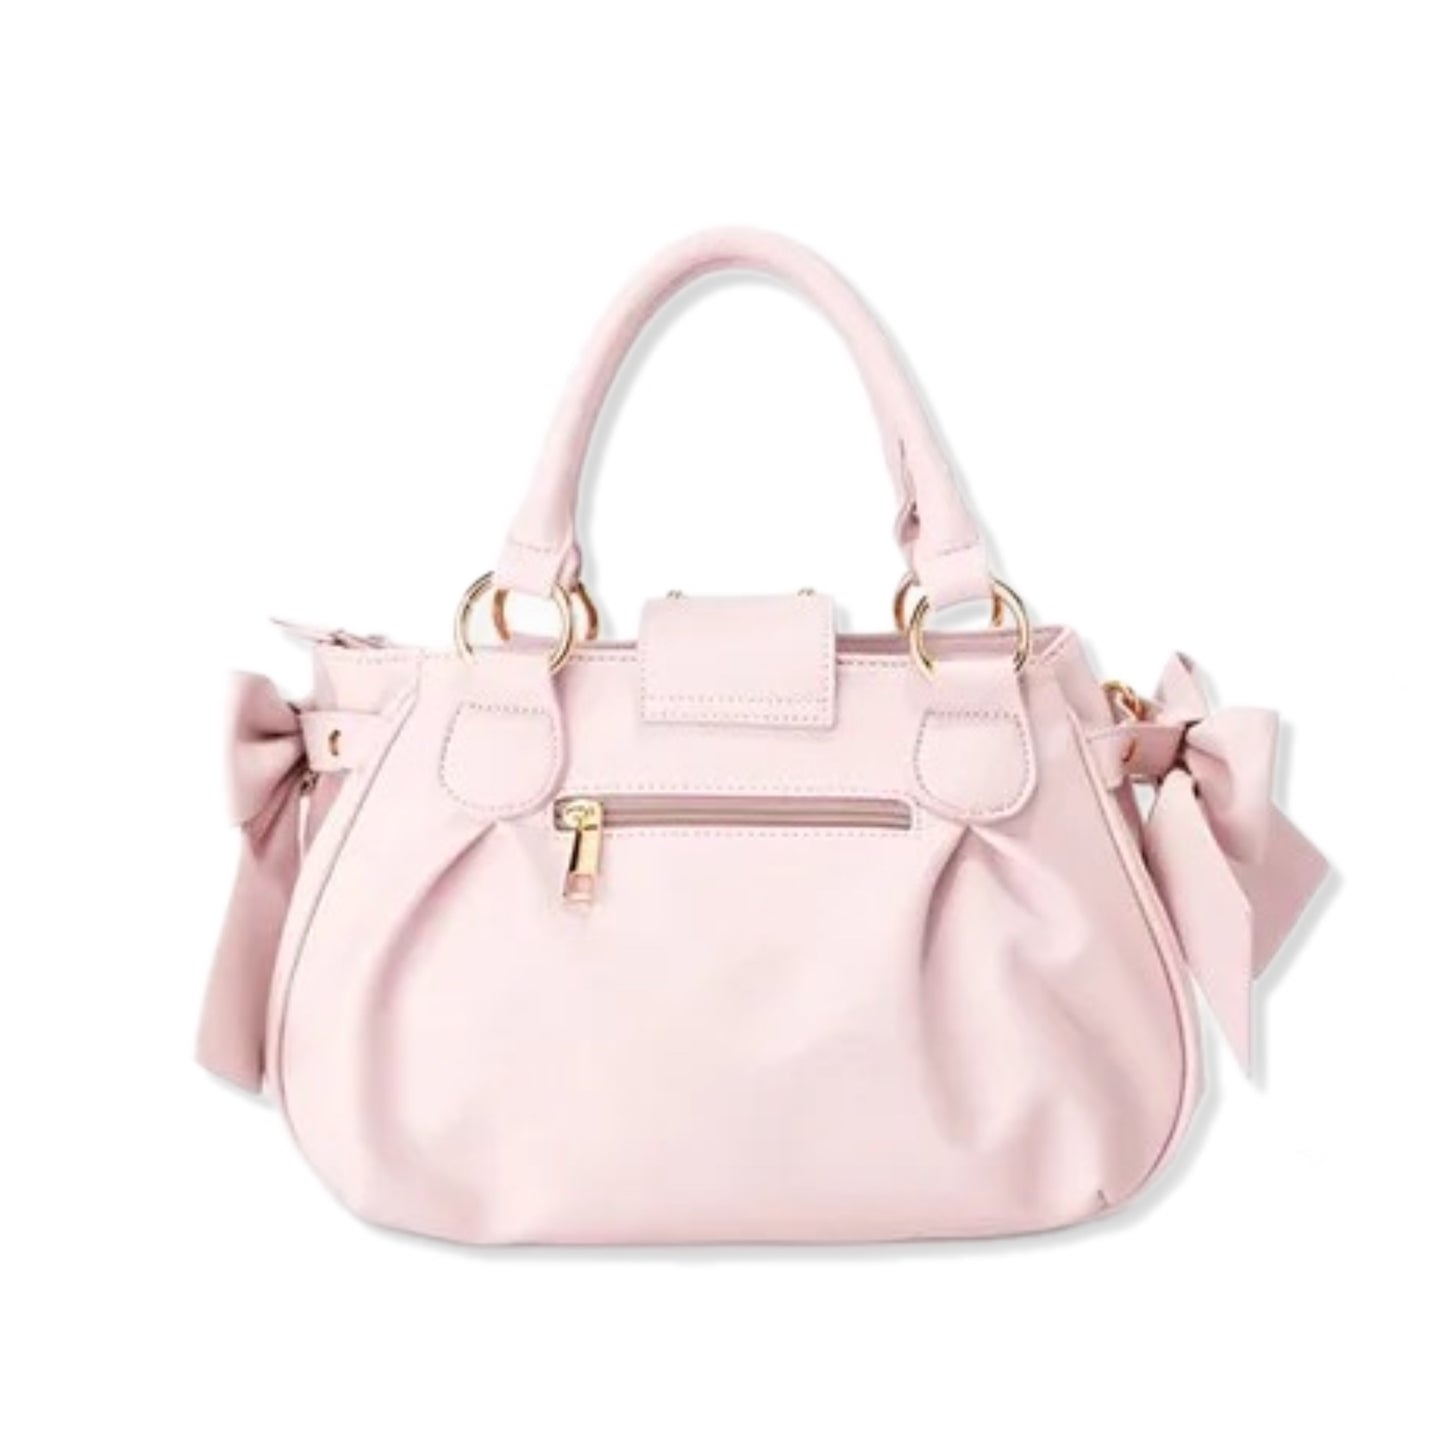 Powder Pink Bow Handbag